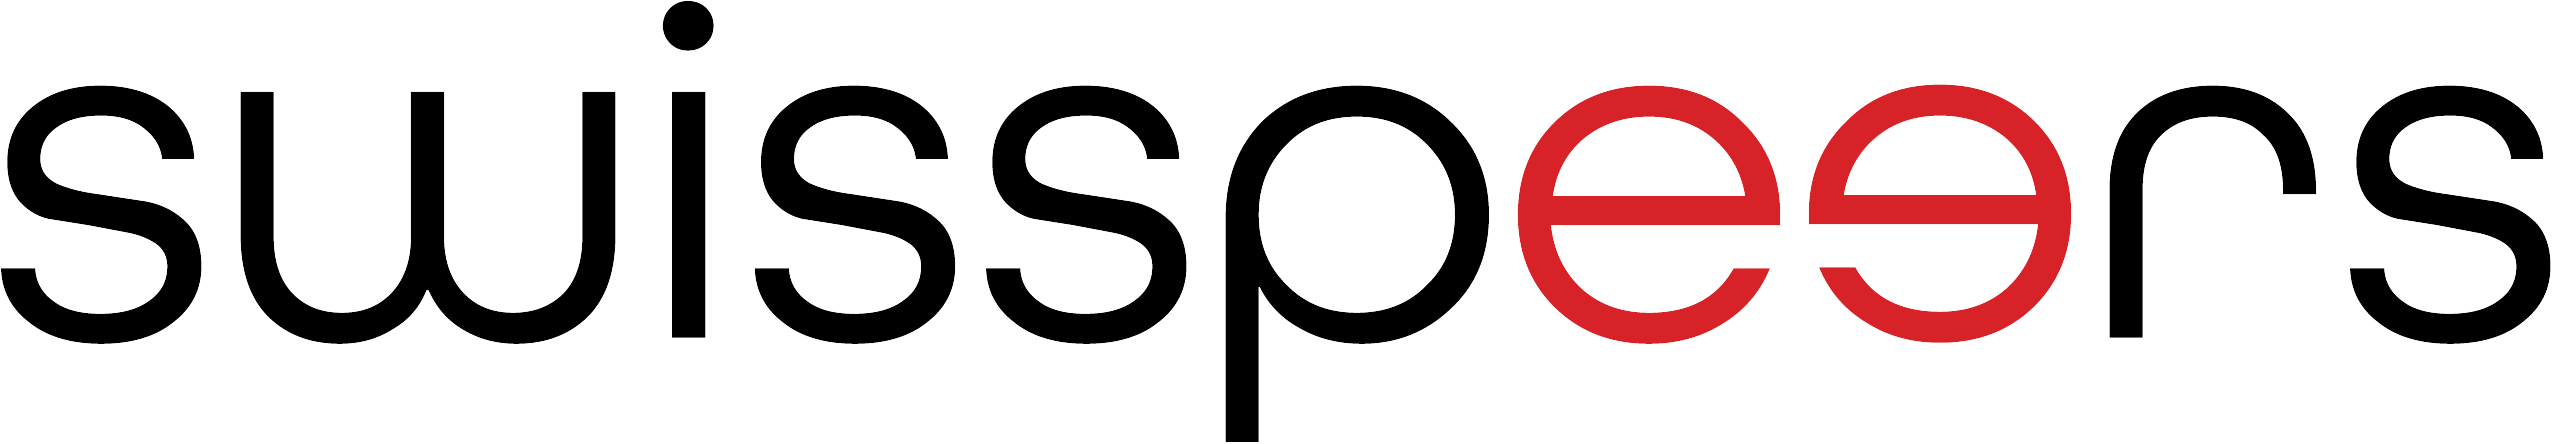 swisspeers_logo